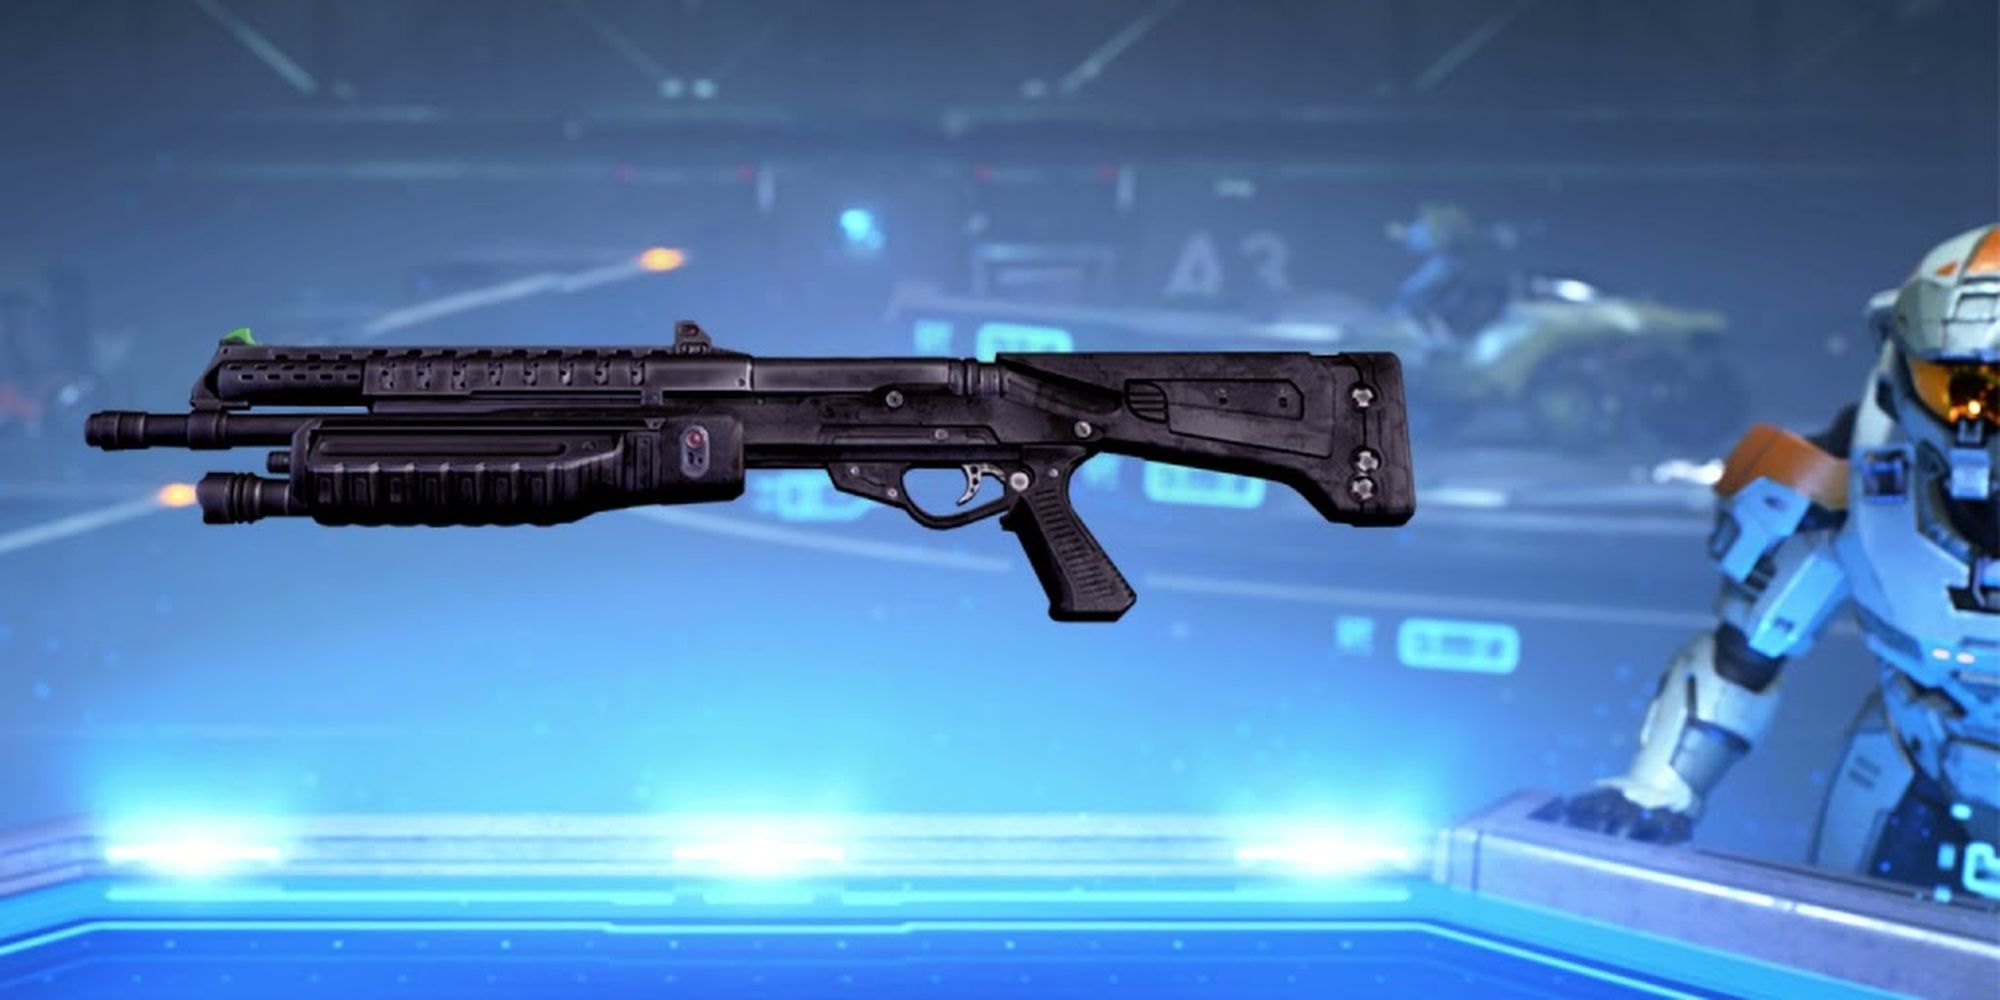 Halo: The M90 Shotgun In Weapon Viewer